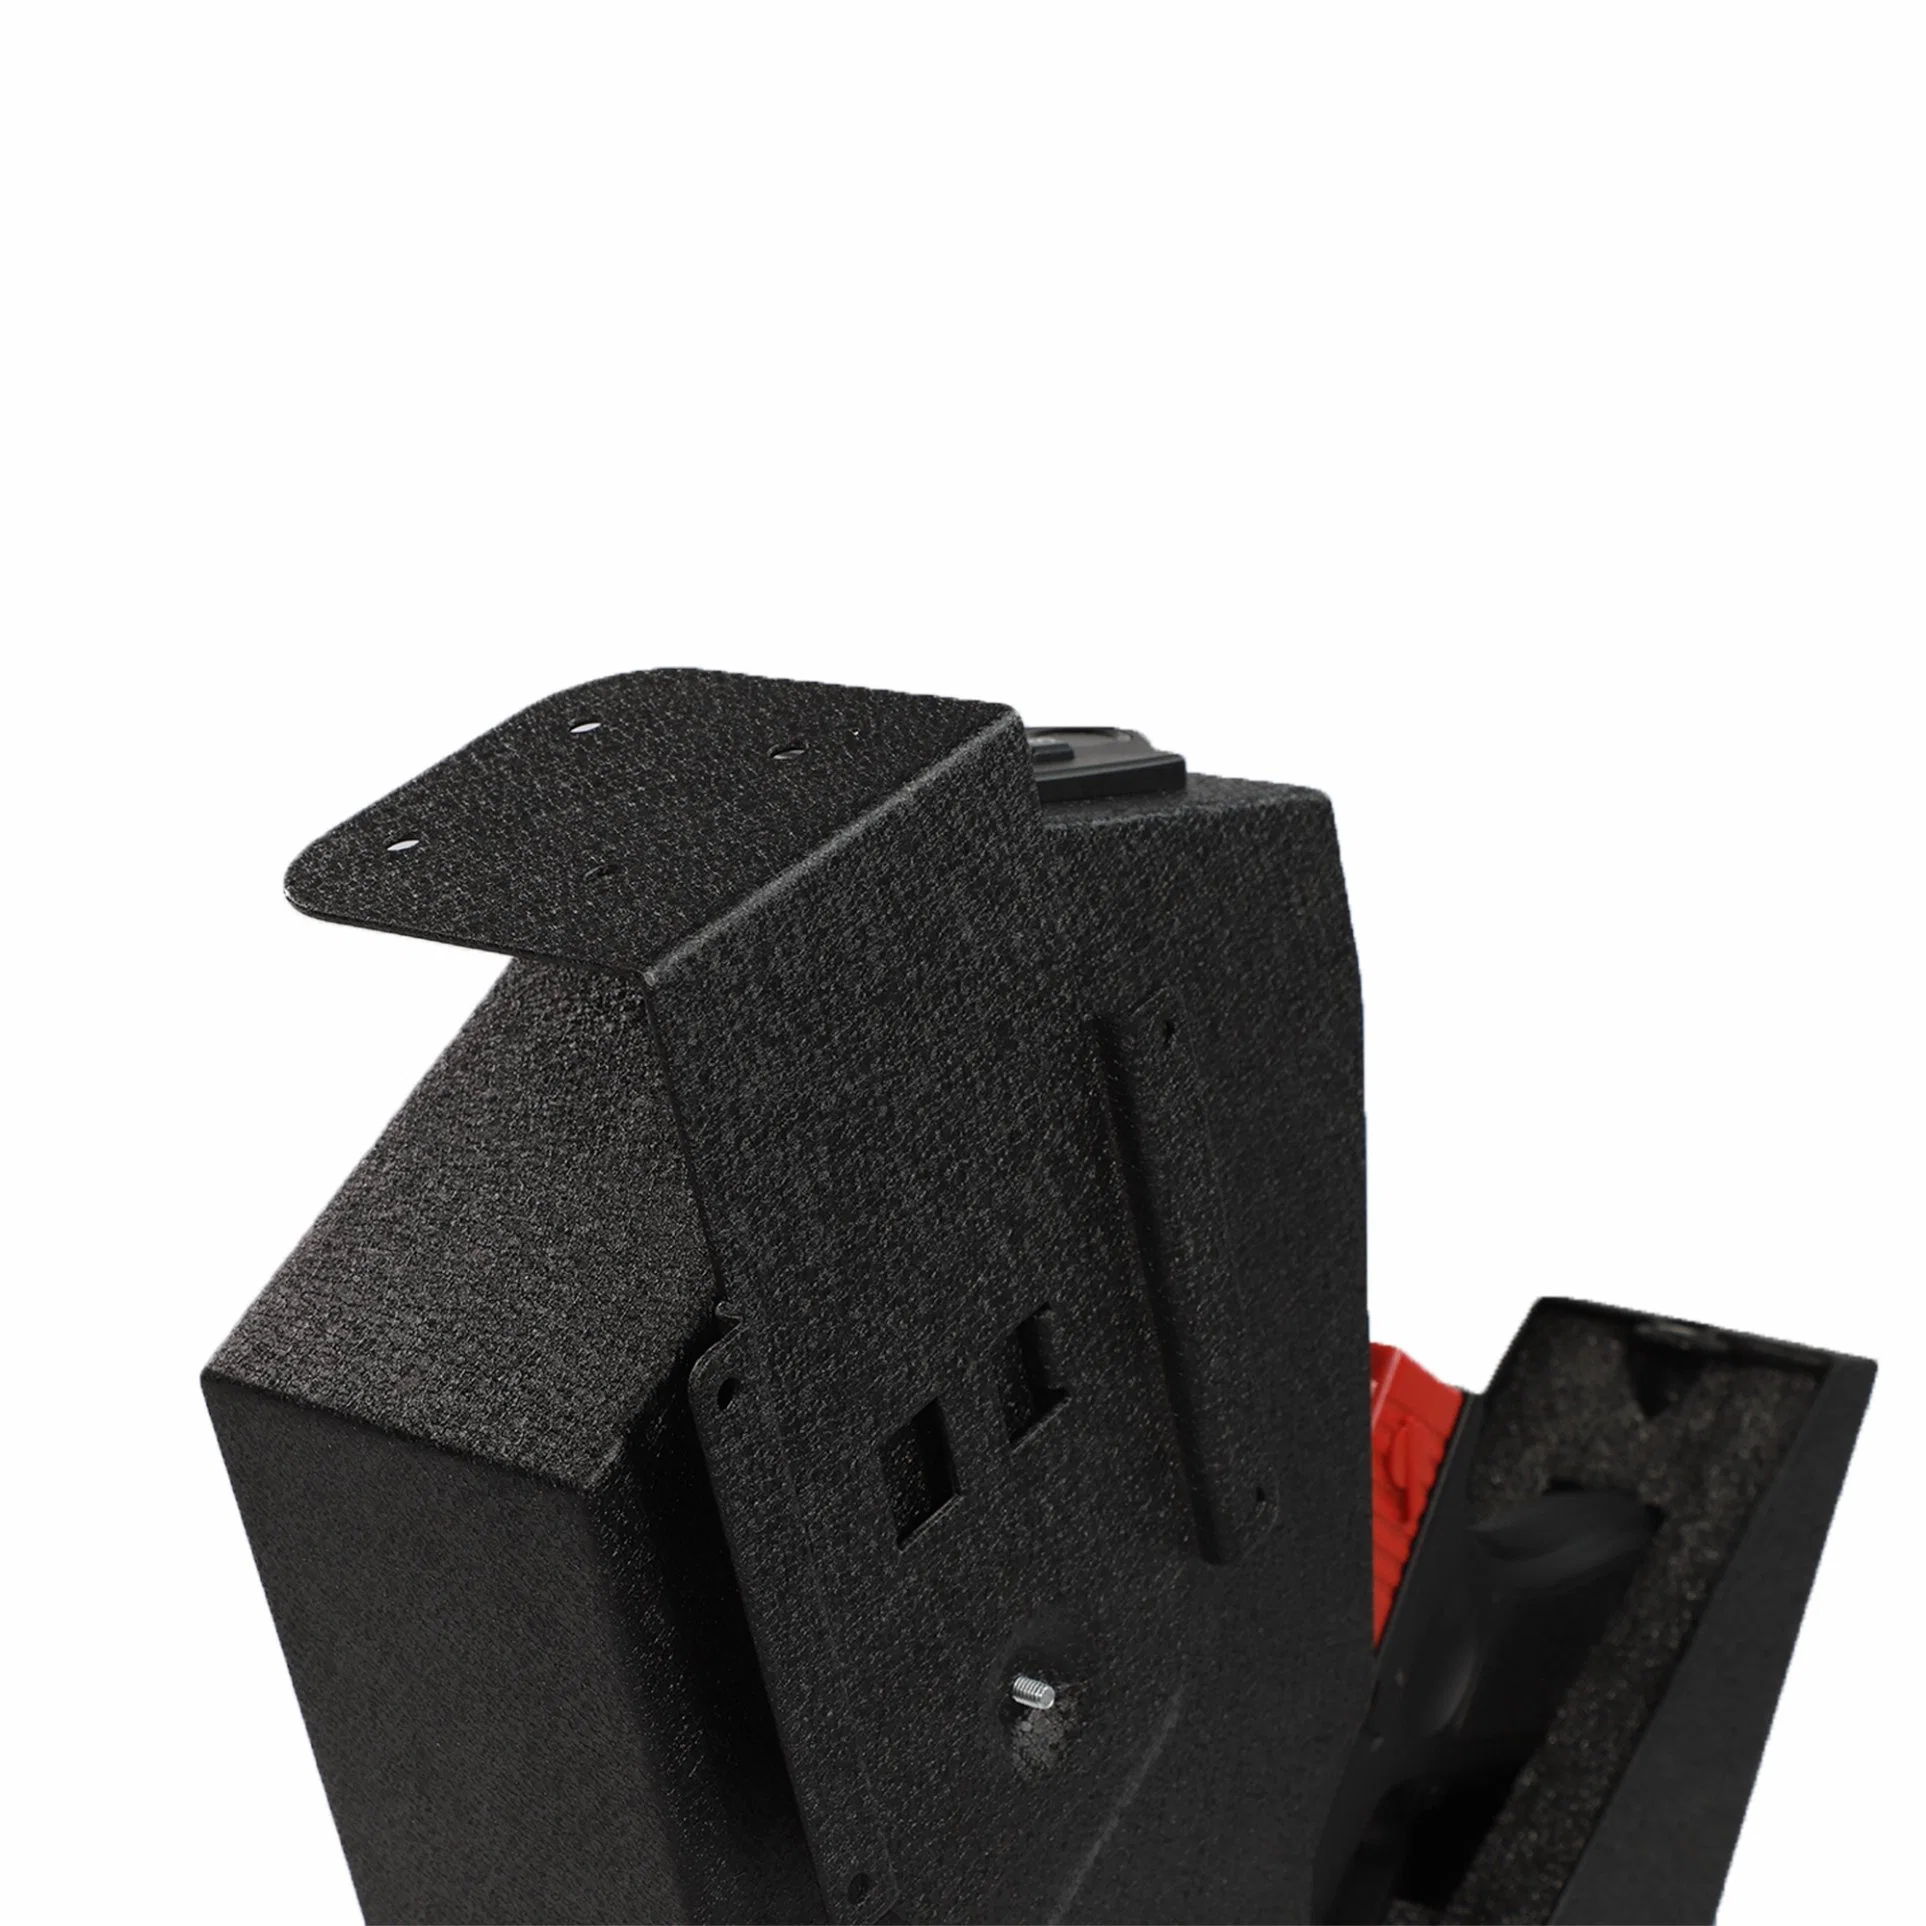 Customized Electronic Keypad Safe Lock Gun Storage Gun Safe Box for Room